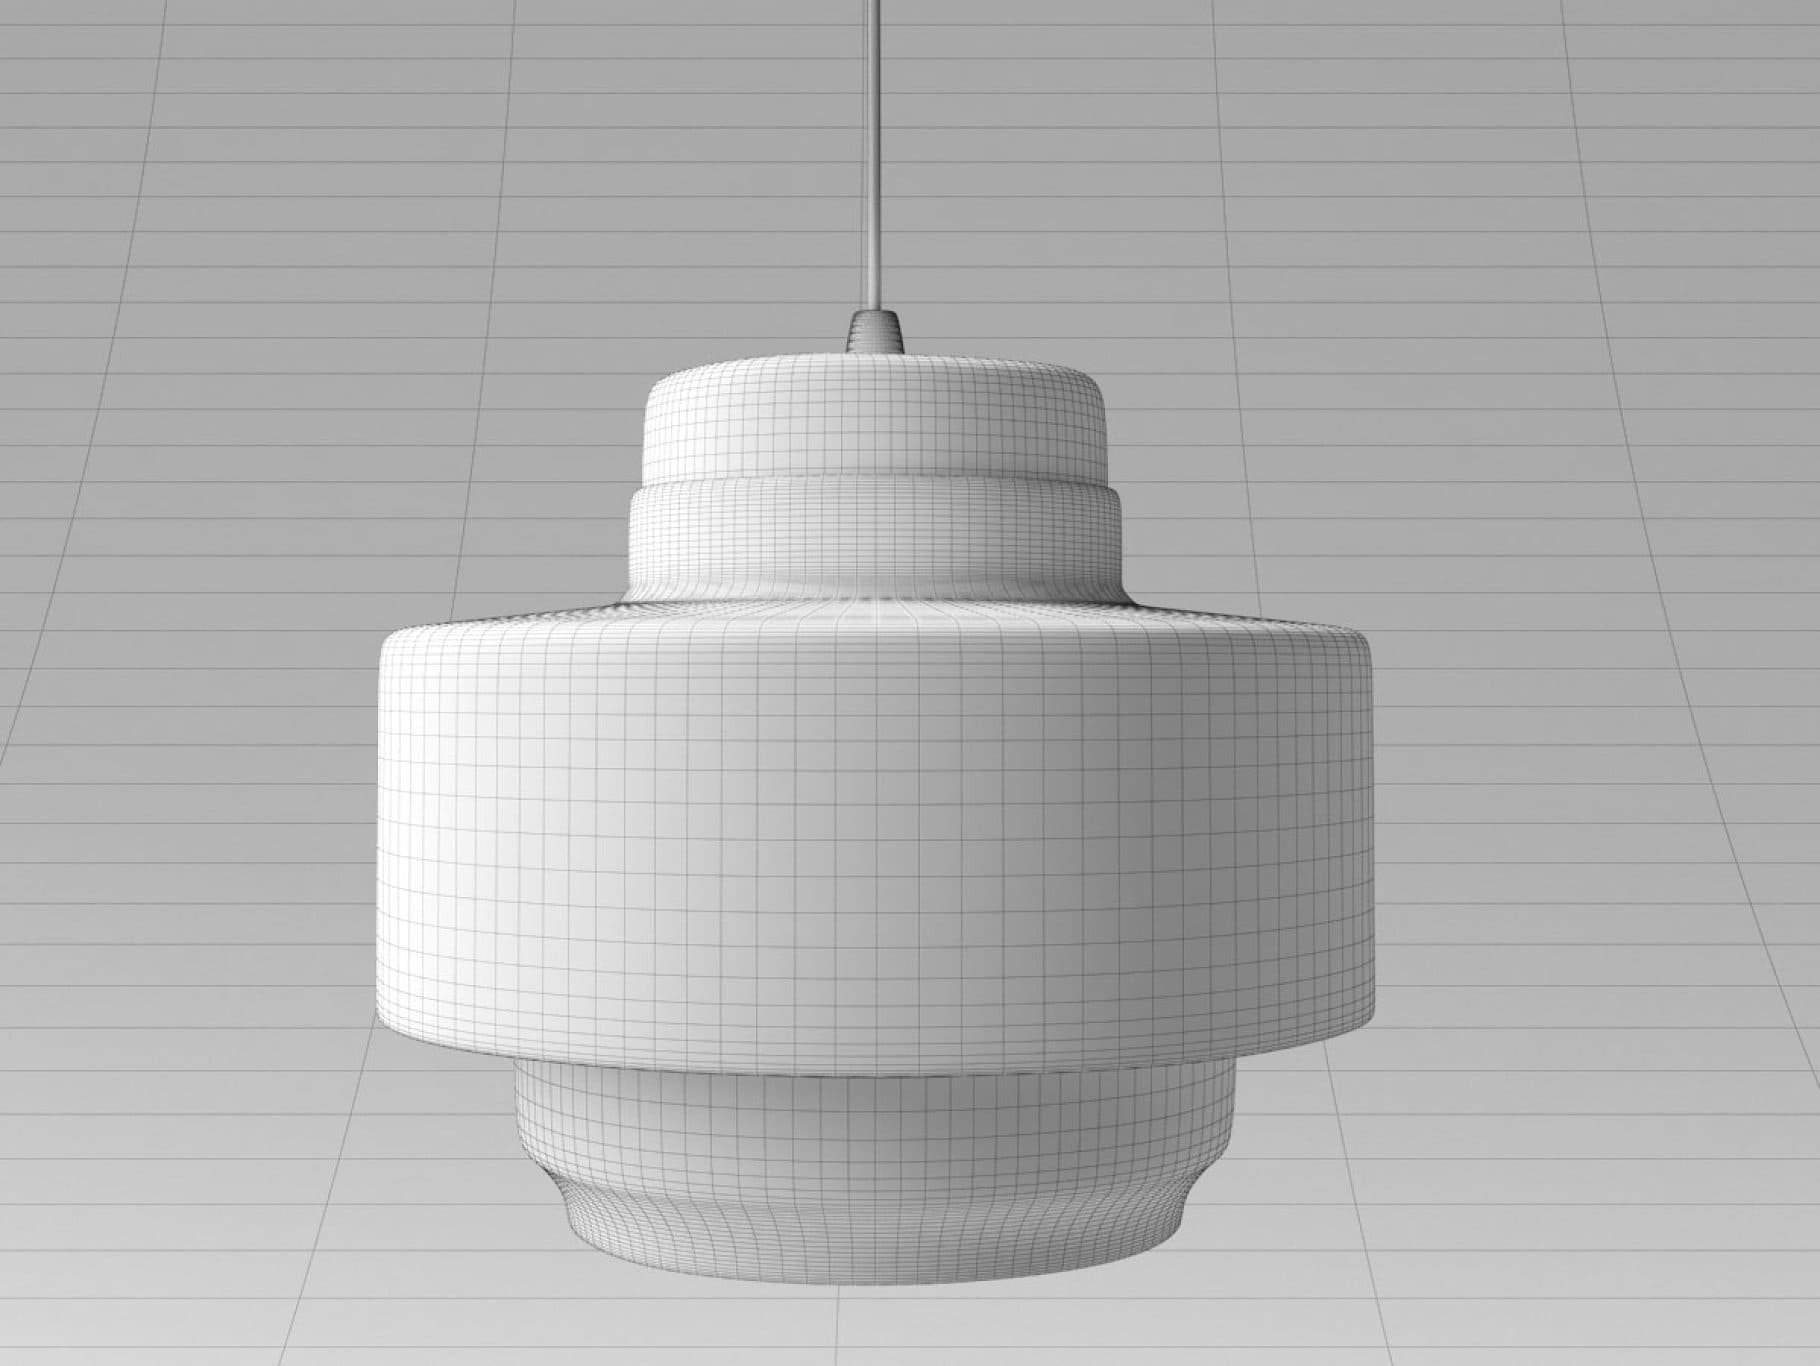 Mesh white model of the Lento lamp.